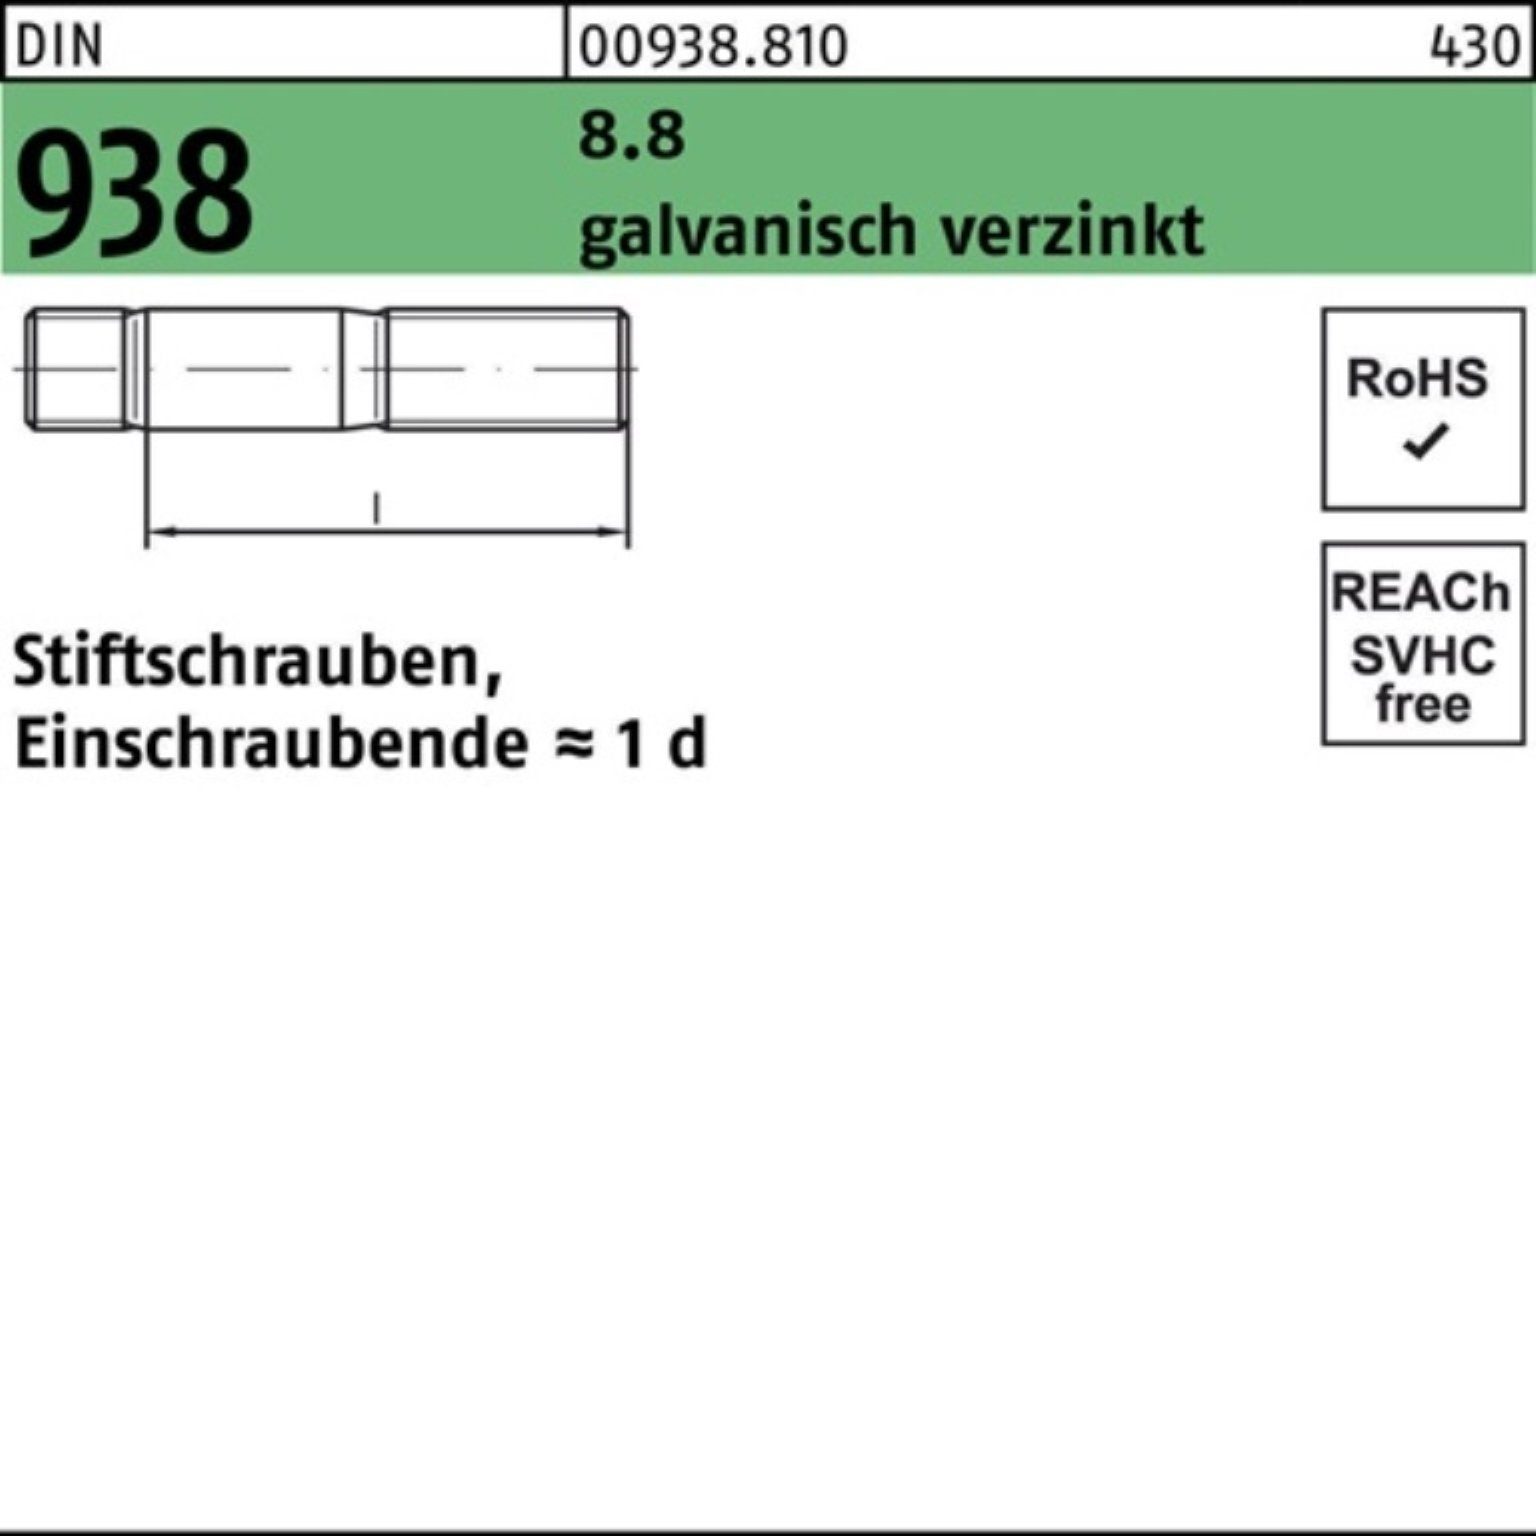 DIN Reyher Stiftschraube M10x Pack 8.8 DIN 100er galv.verz. 20 Stück Stiftschraube 938 50